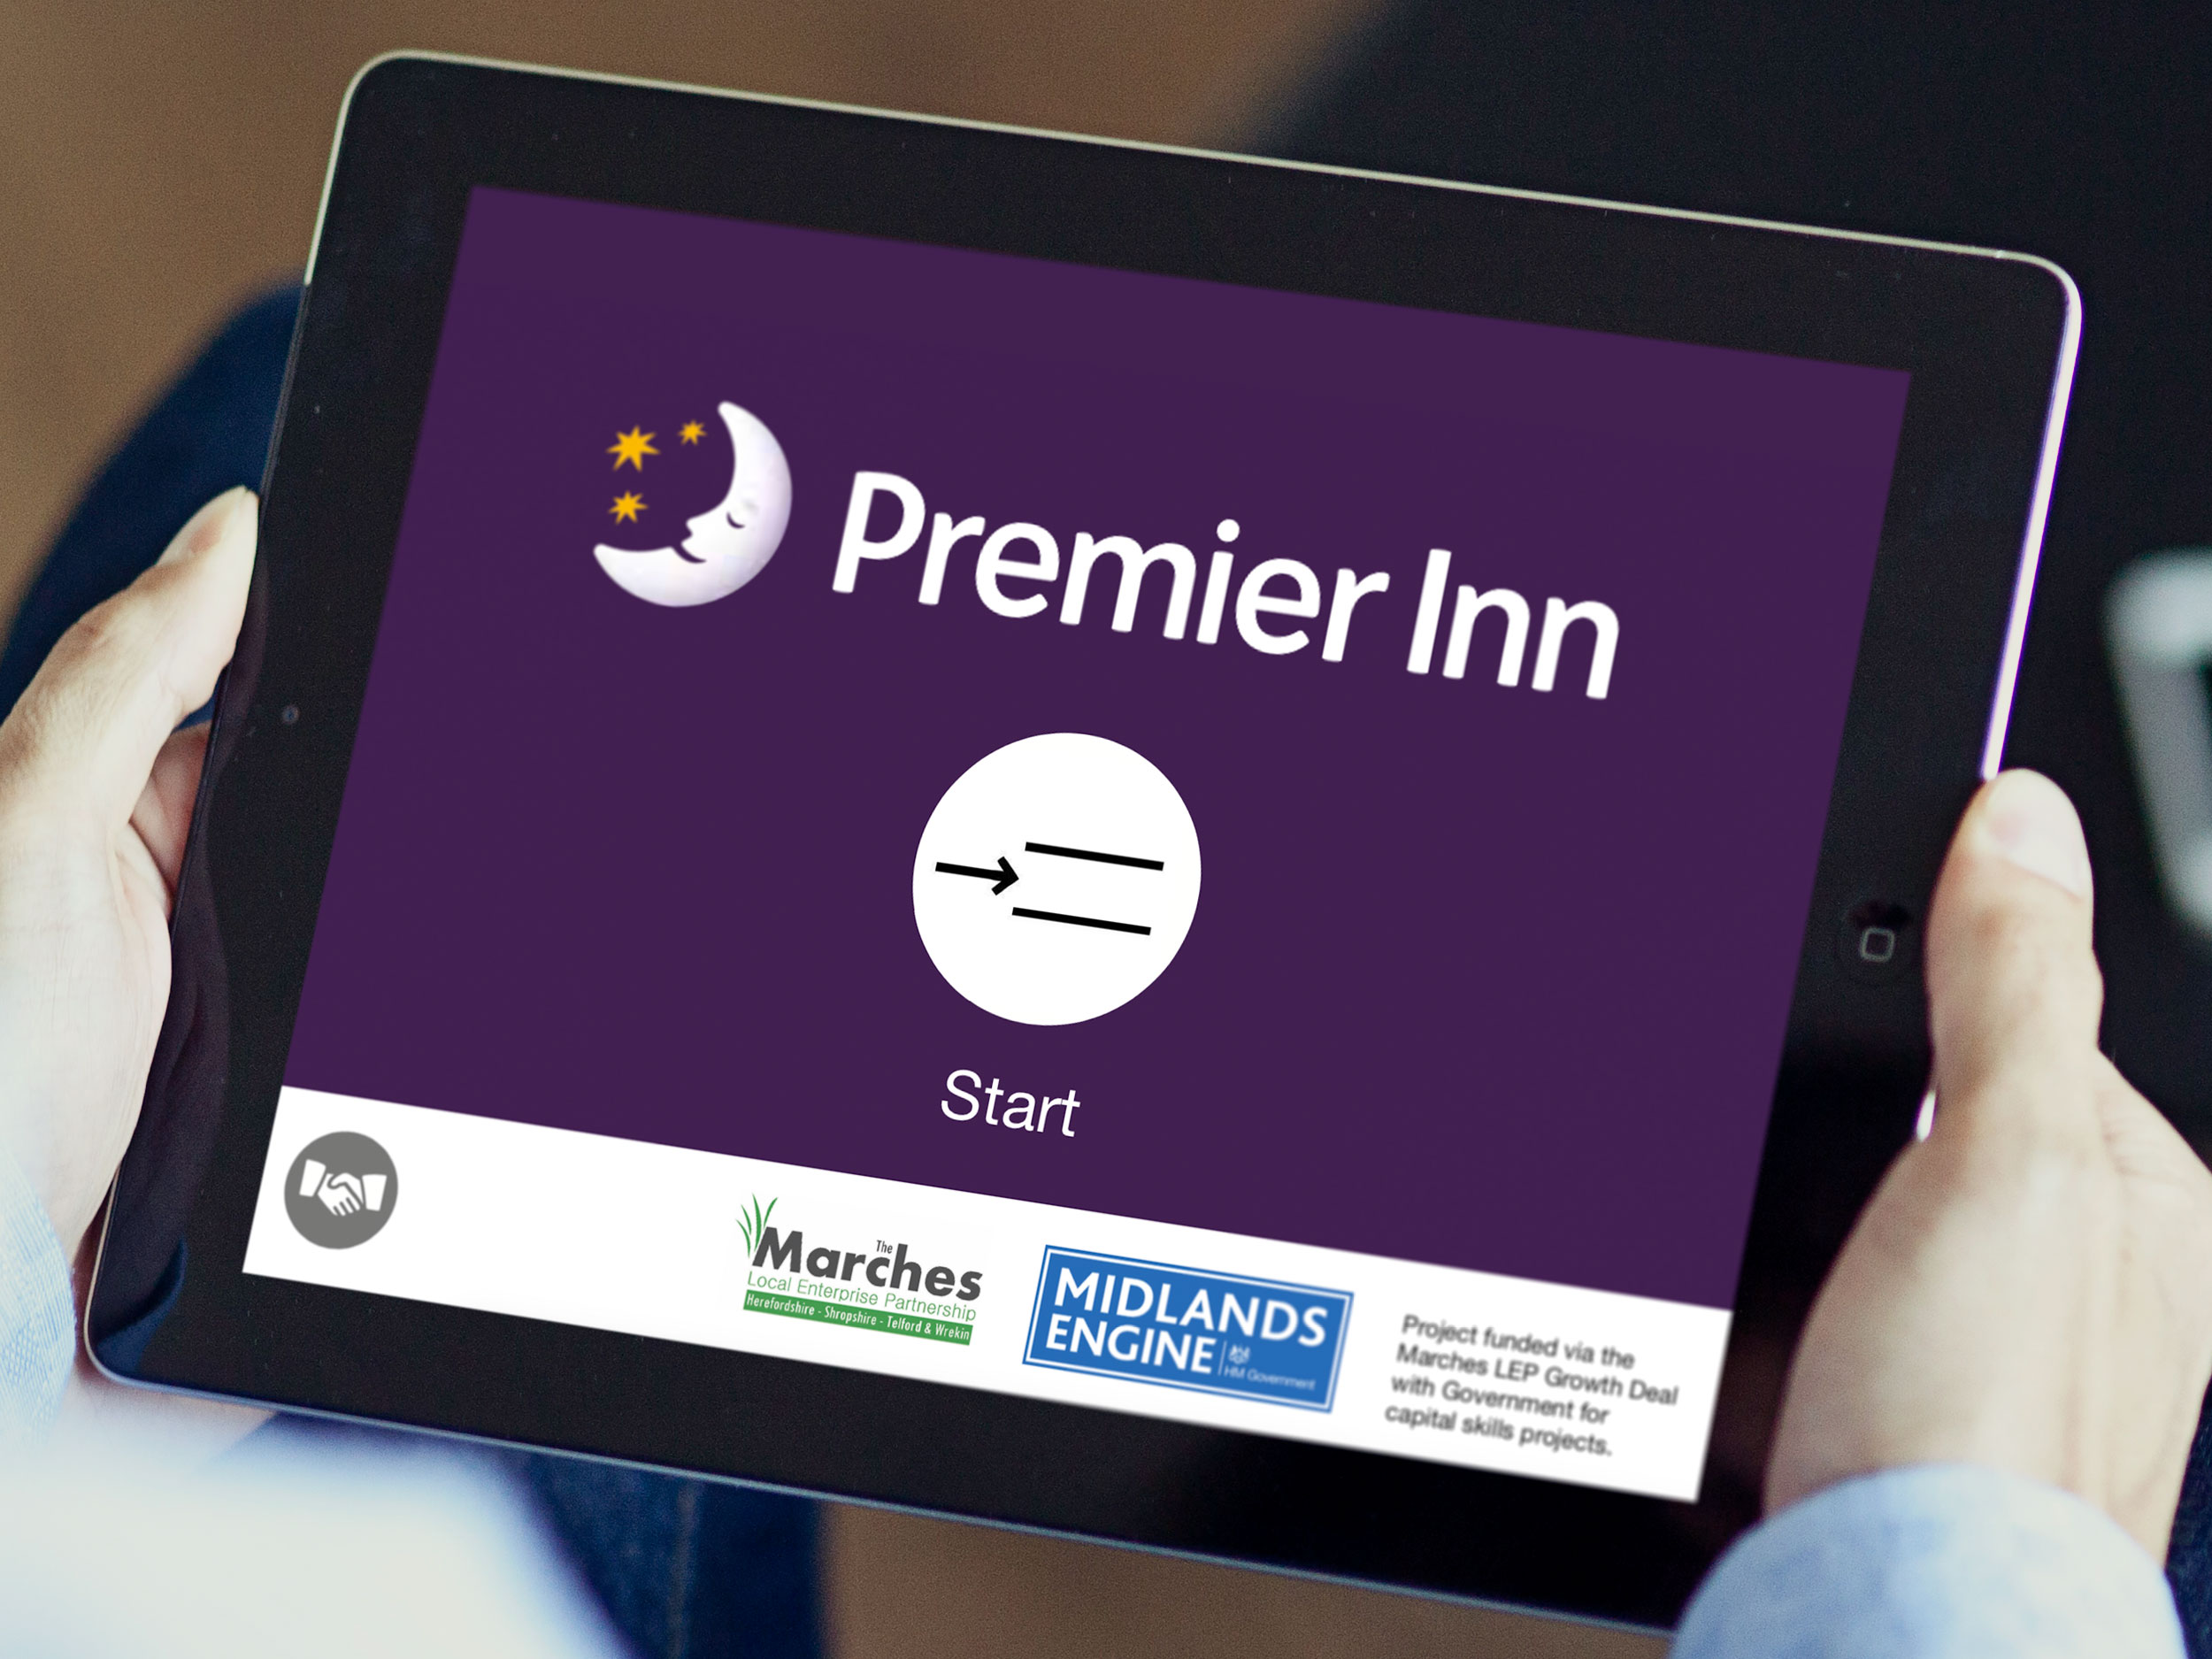 Premier Inn Training App